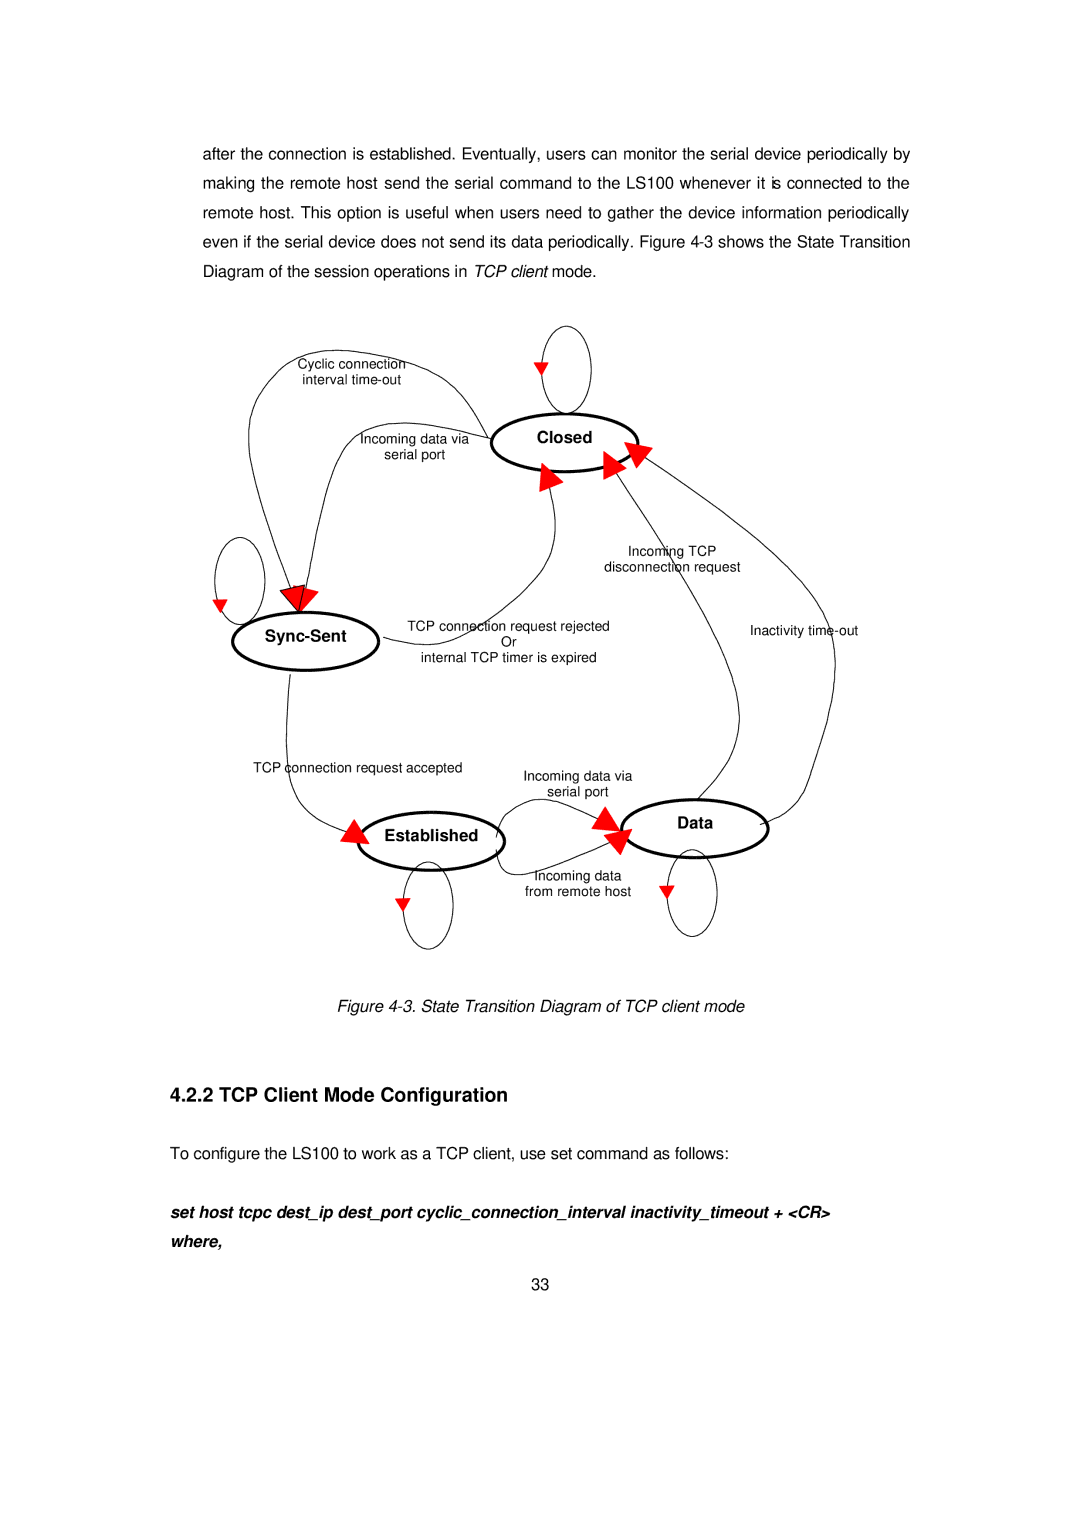 Senatek LS100 manual TCP Client Mode Configuration, State Transition Diagram of TCP client mode 